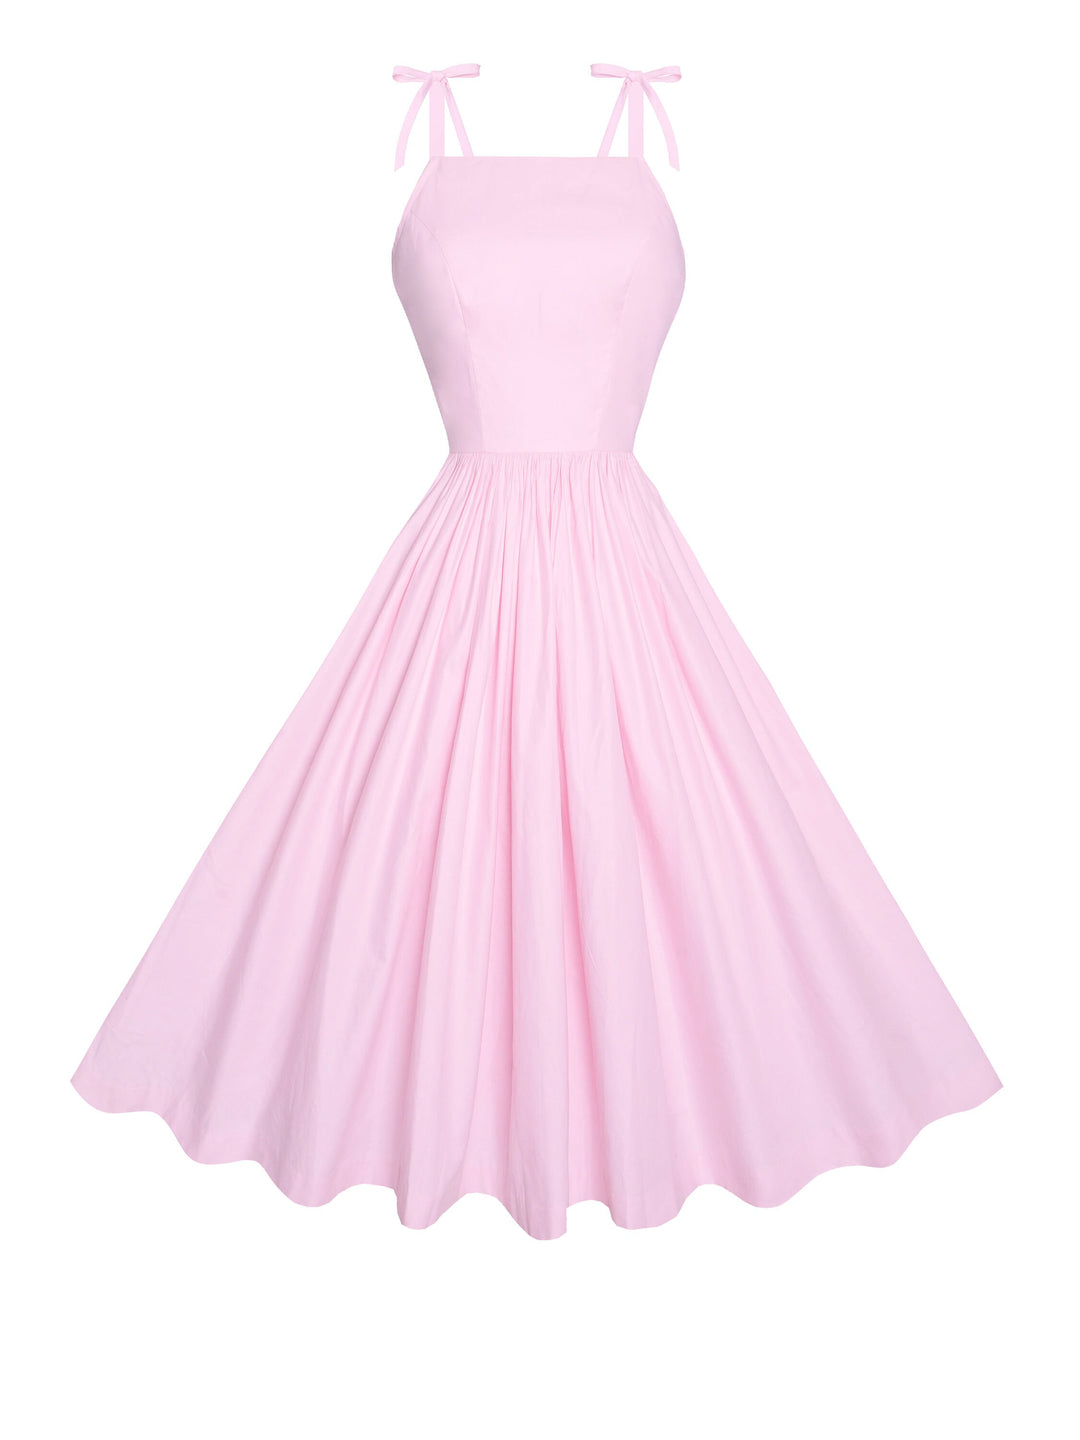 MTO - Lara Dress Ballerina Pink Cotton